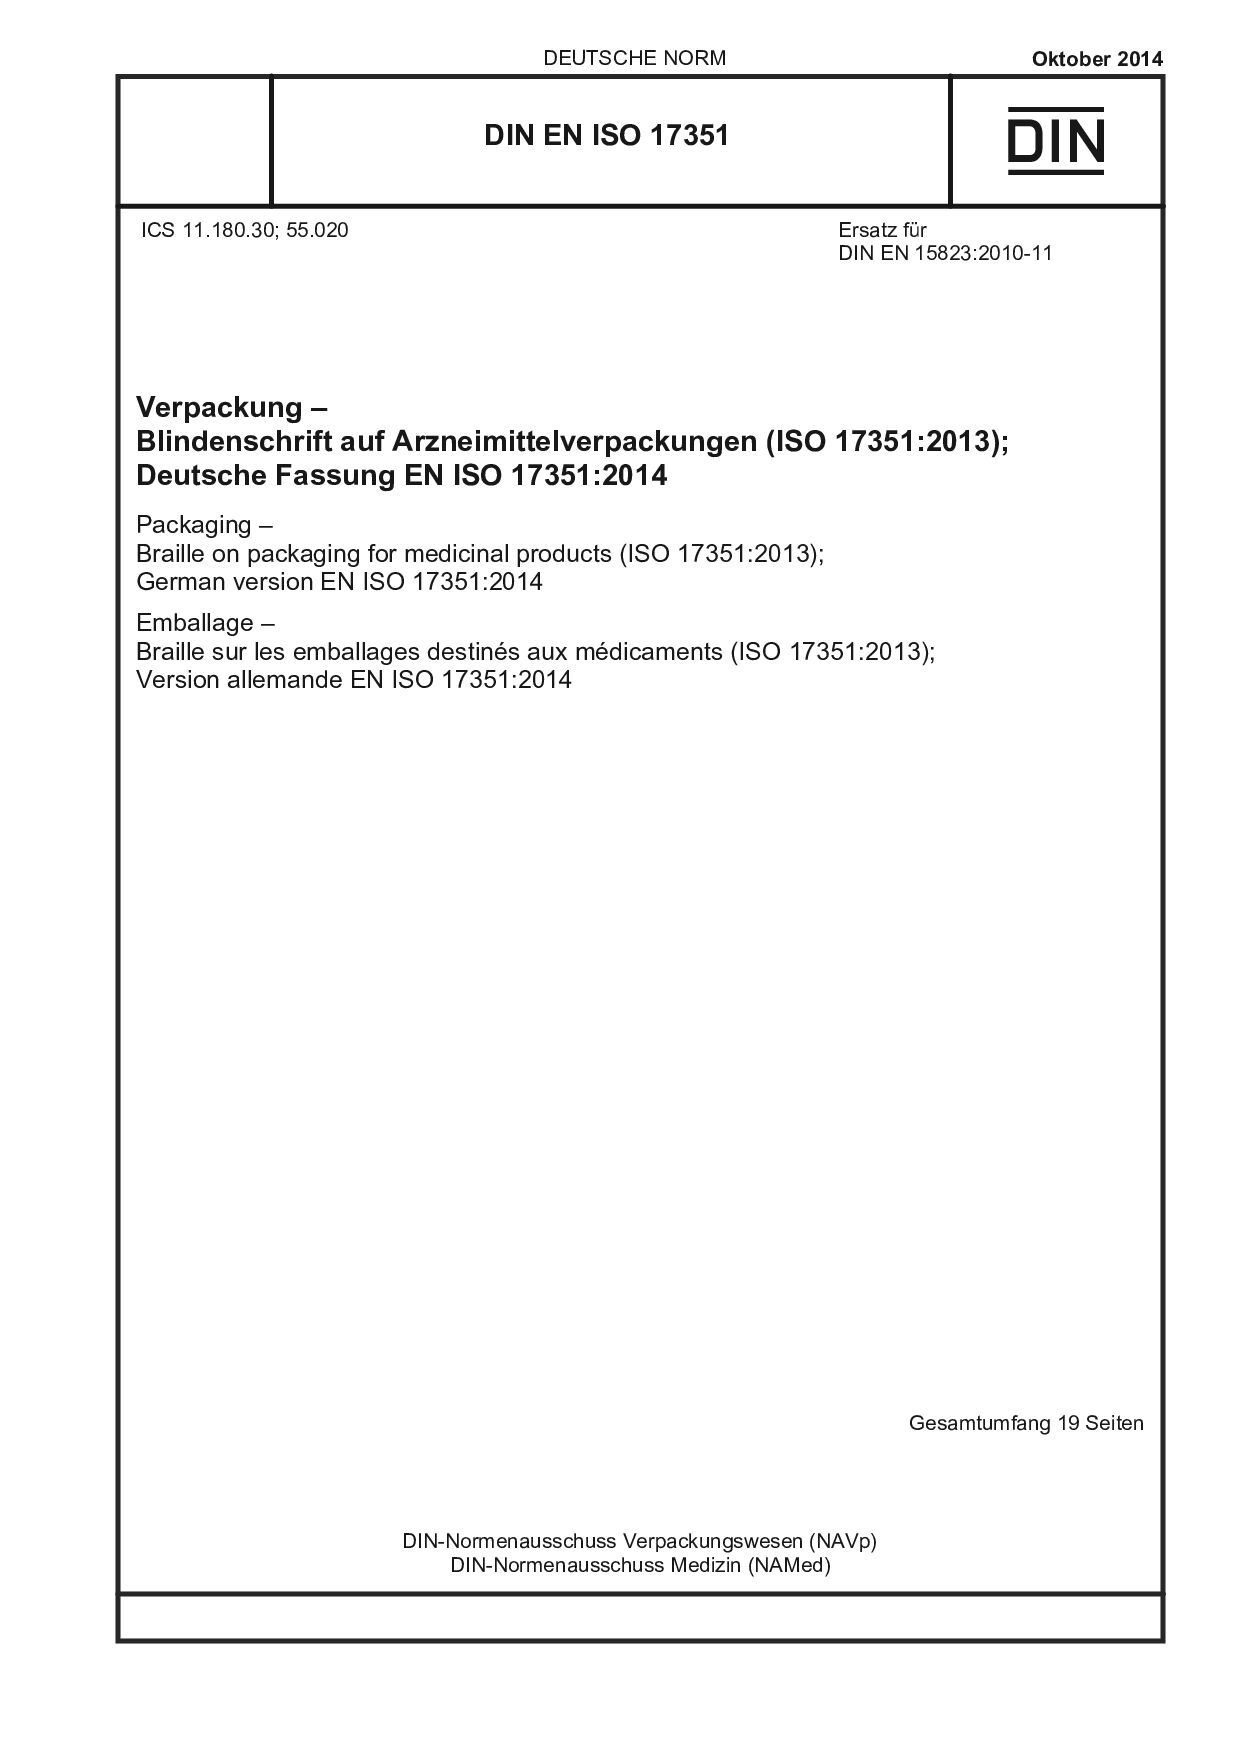 DIN EN ISO 17351:2014